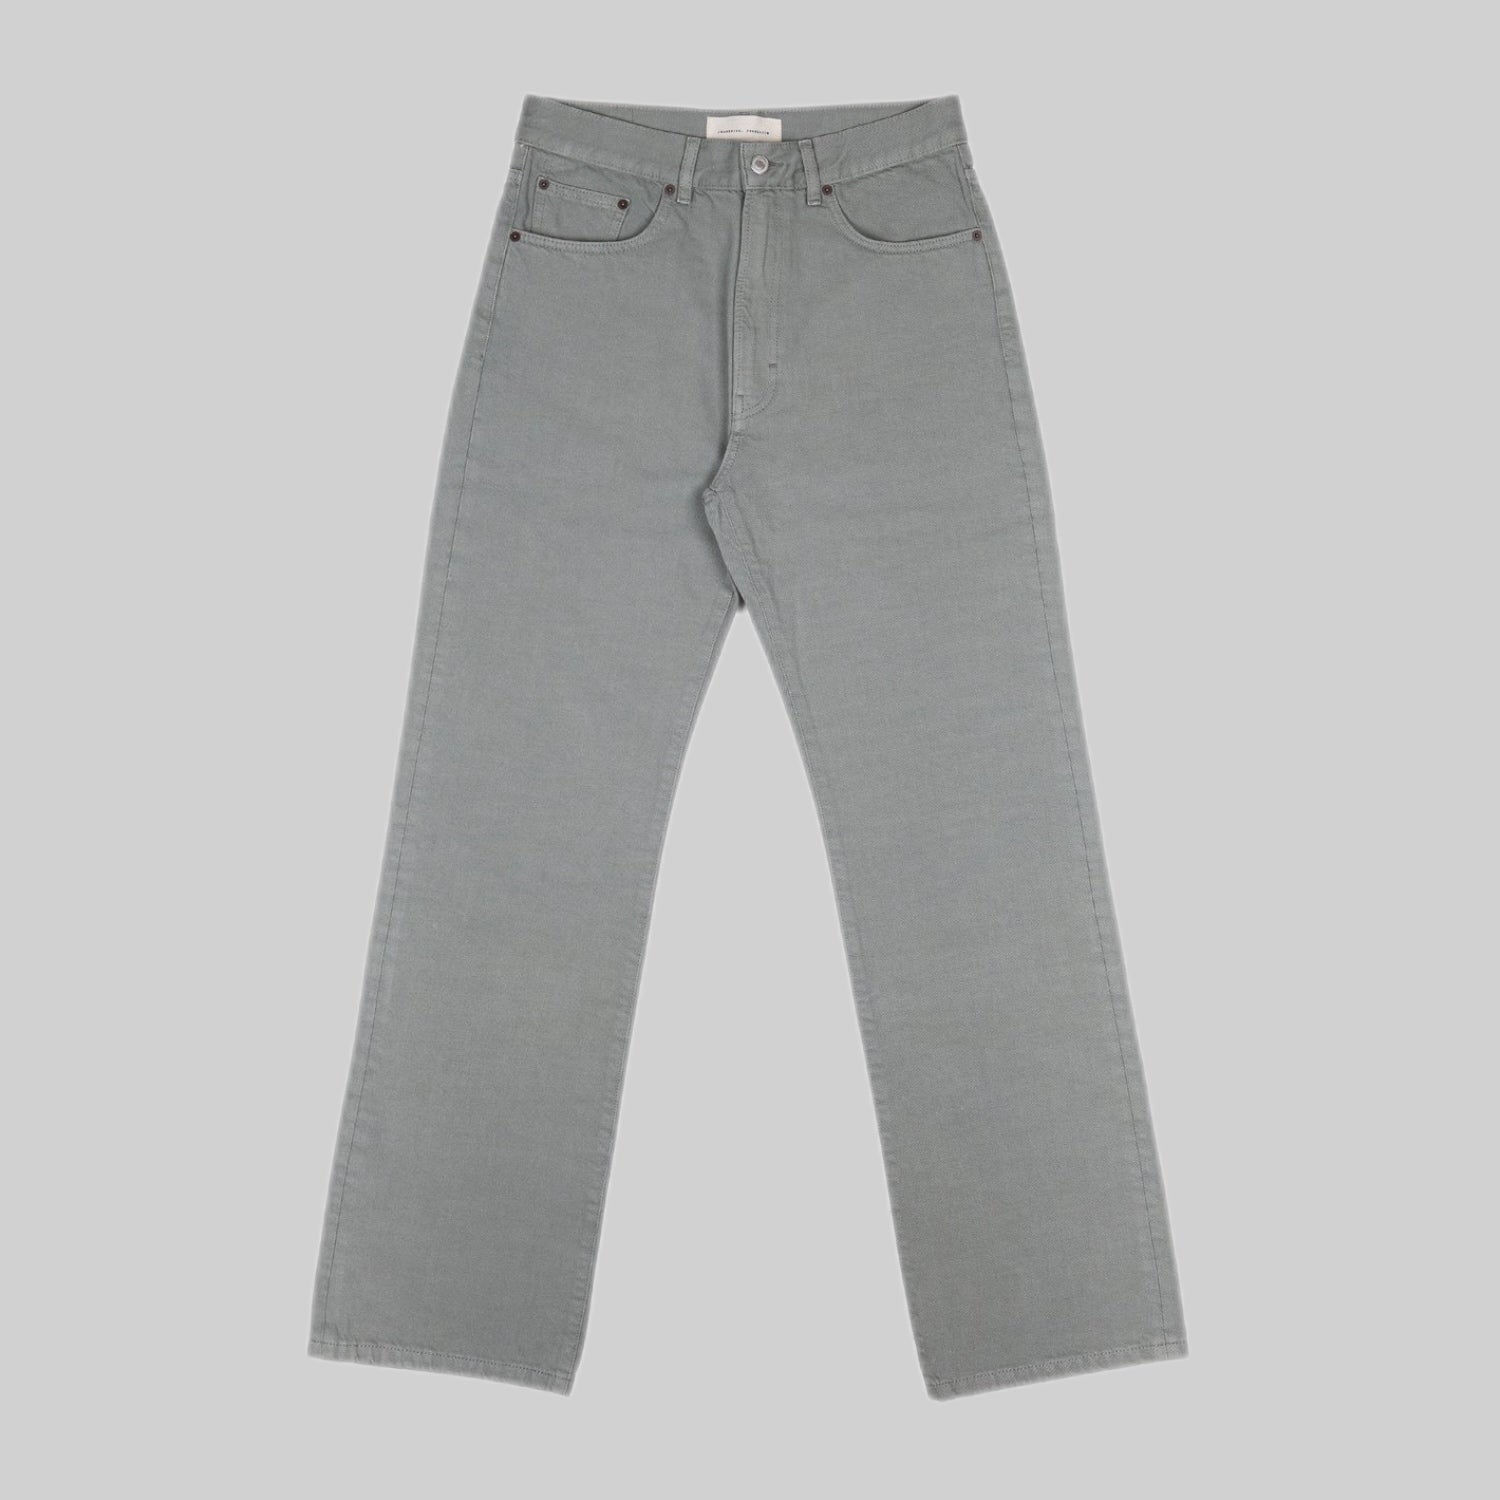 Jeanerica jeans, men, gray, frontside